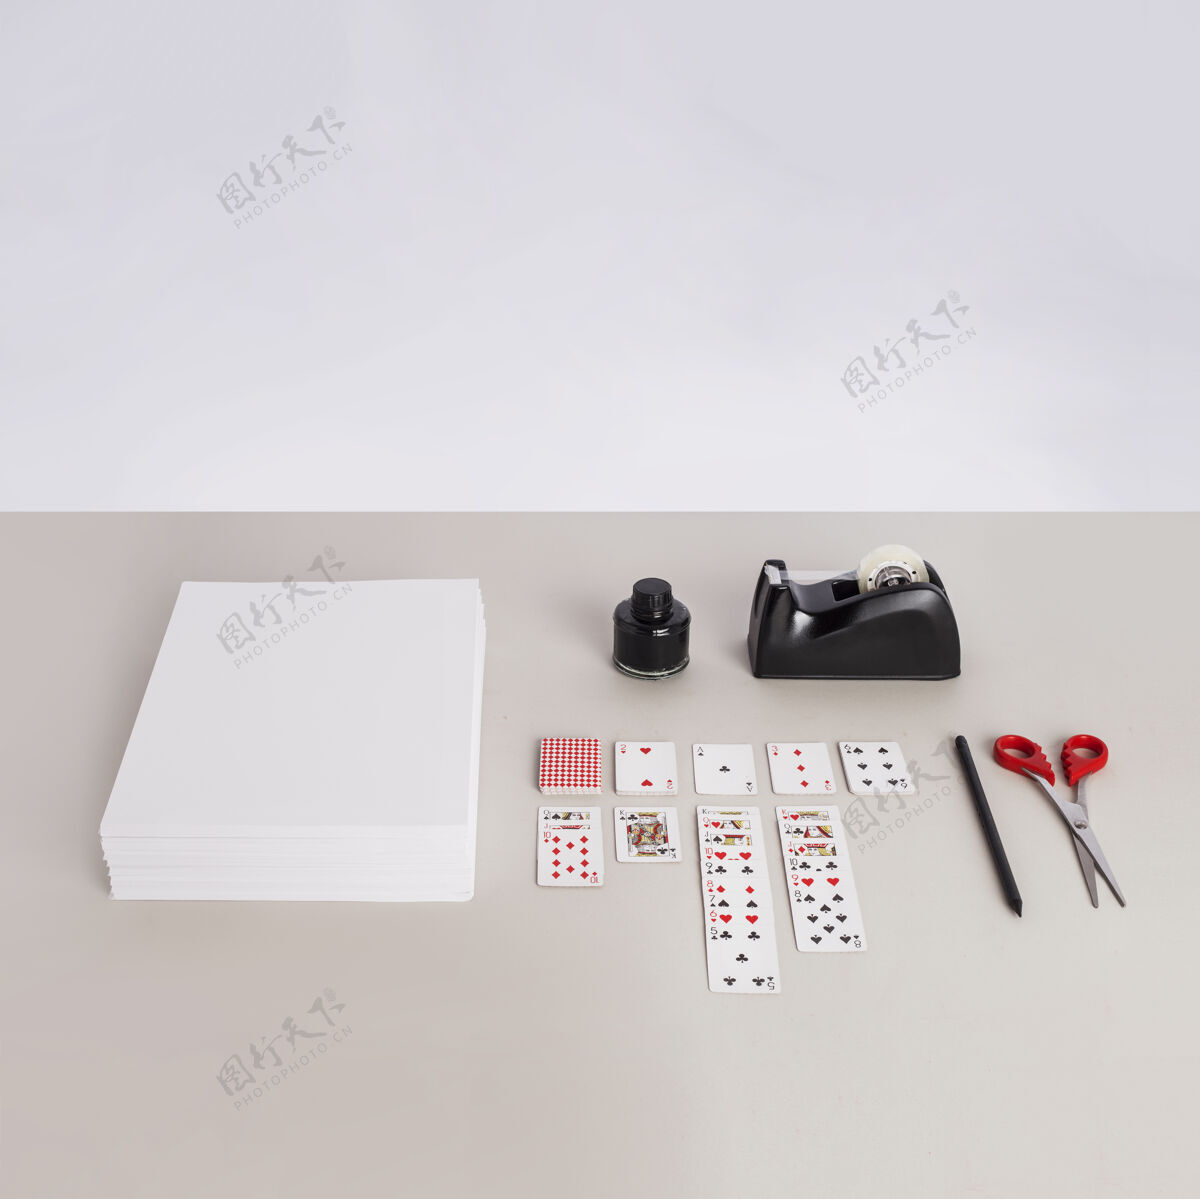 设备纸 扑克牌 剪刀 铅笔和胶带机在灰色的表面缝纫胶带金属